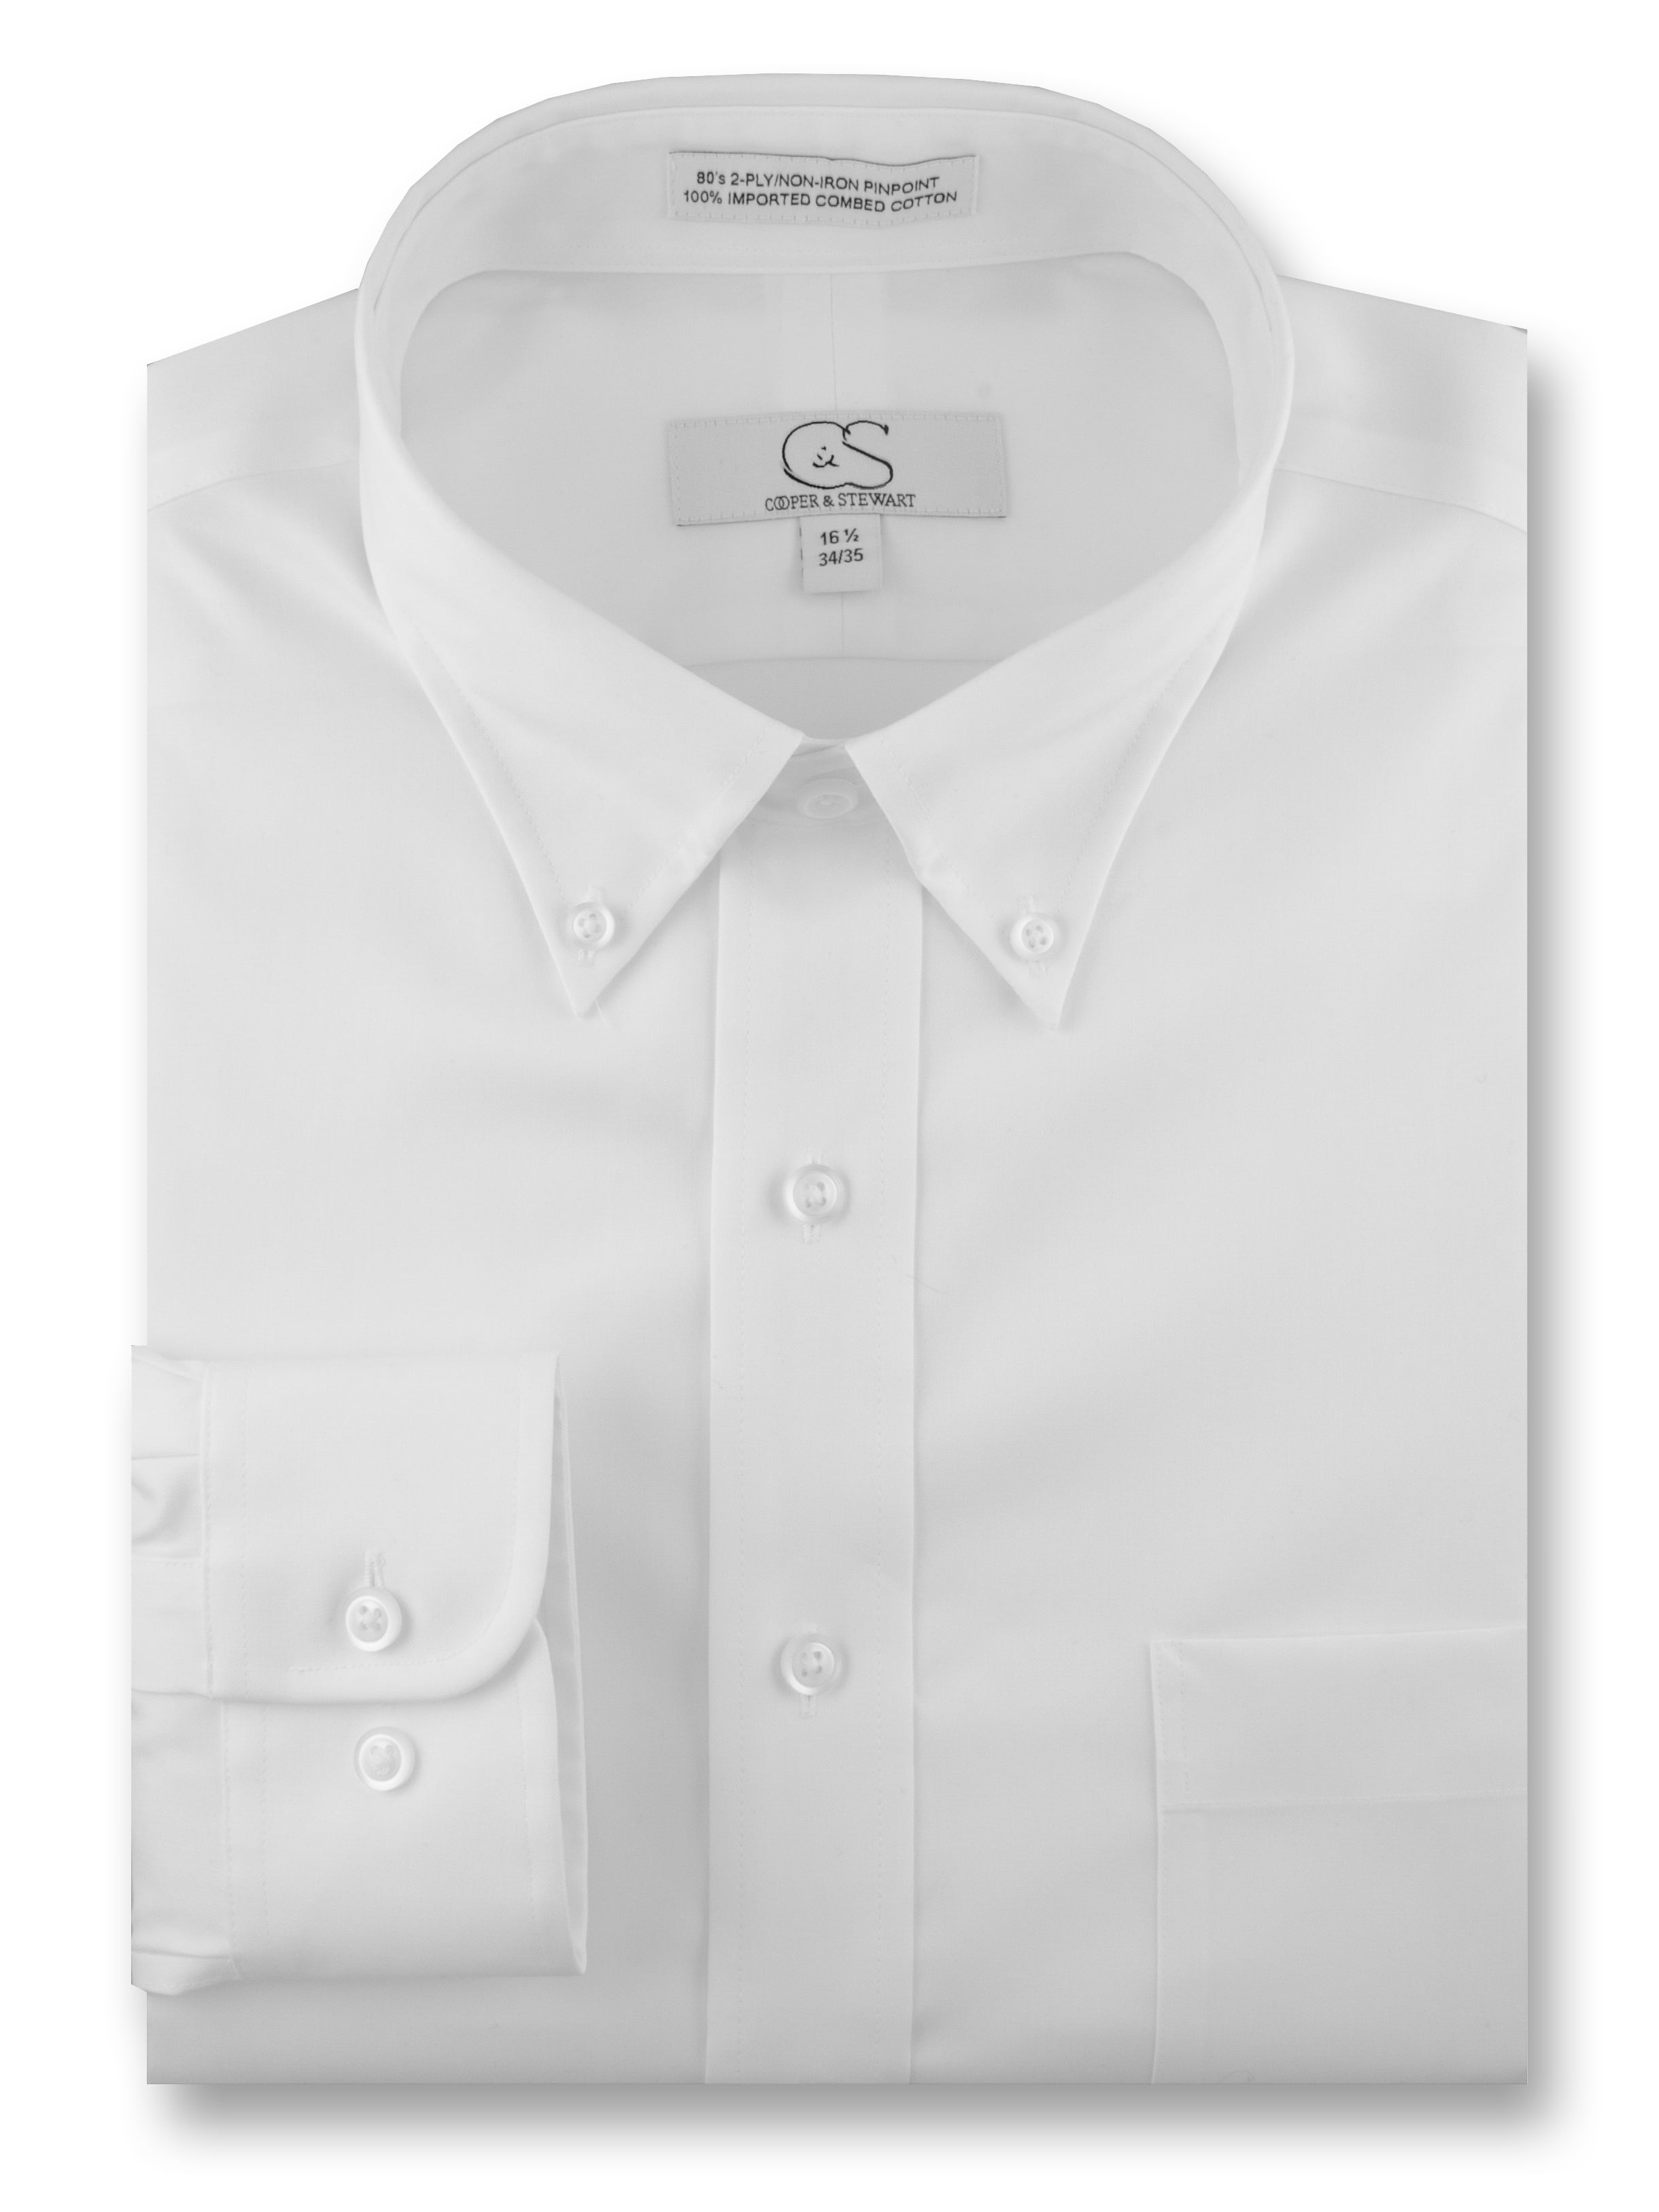 COOPER /& STEWART Big /& Tall Non-Iron Pinpoint Button-Down Collar Dress Shirt